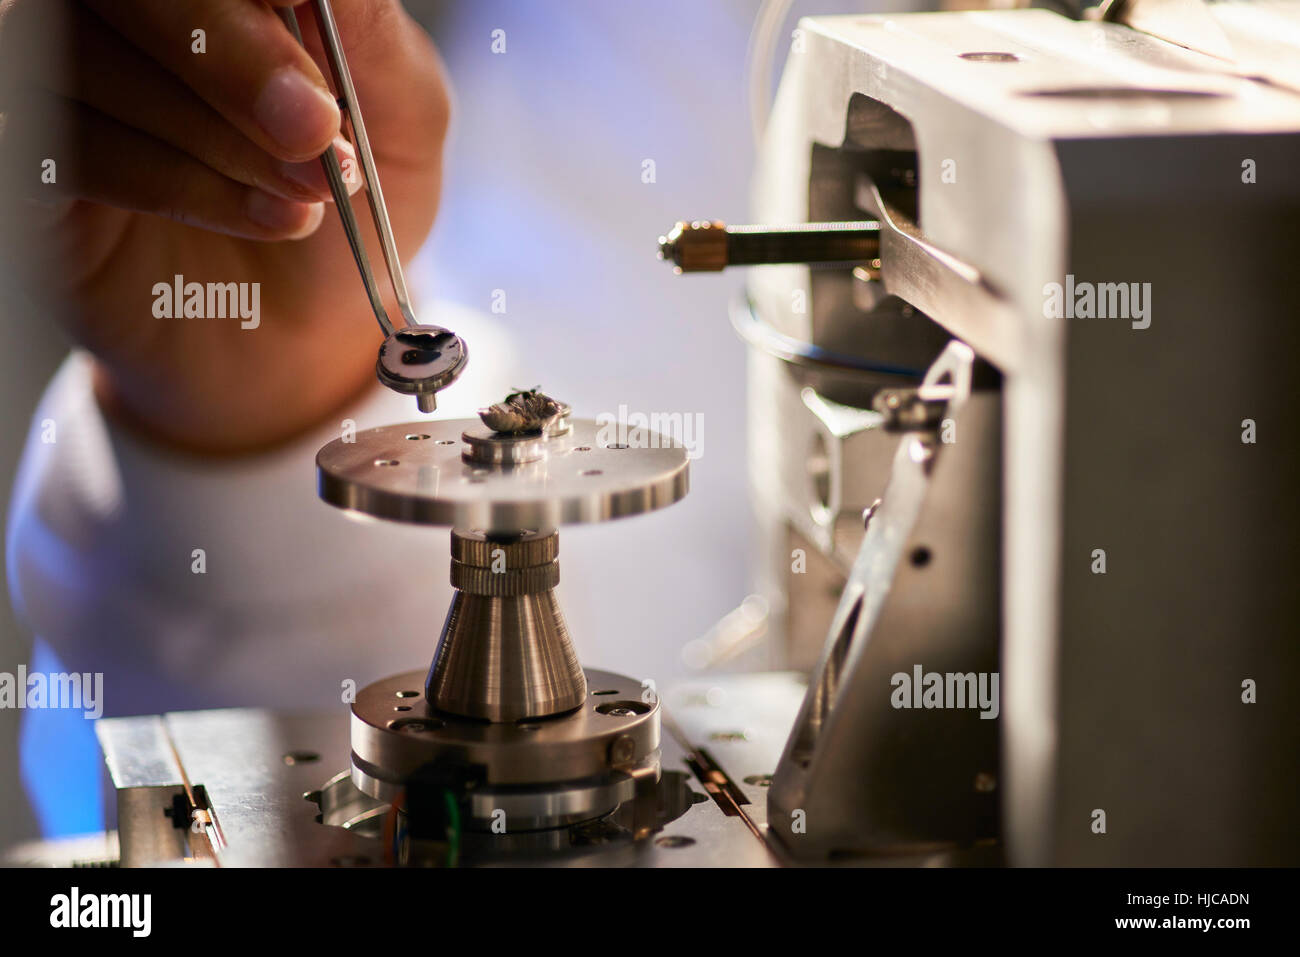 Les scientifiques de l'objet placé sur le matériel scientifique à l'aide de pincettes Banque D'Images